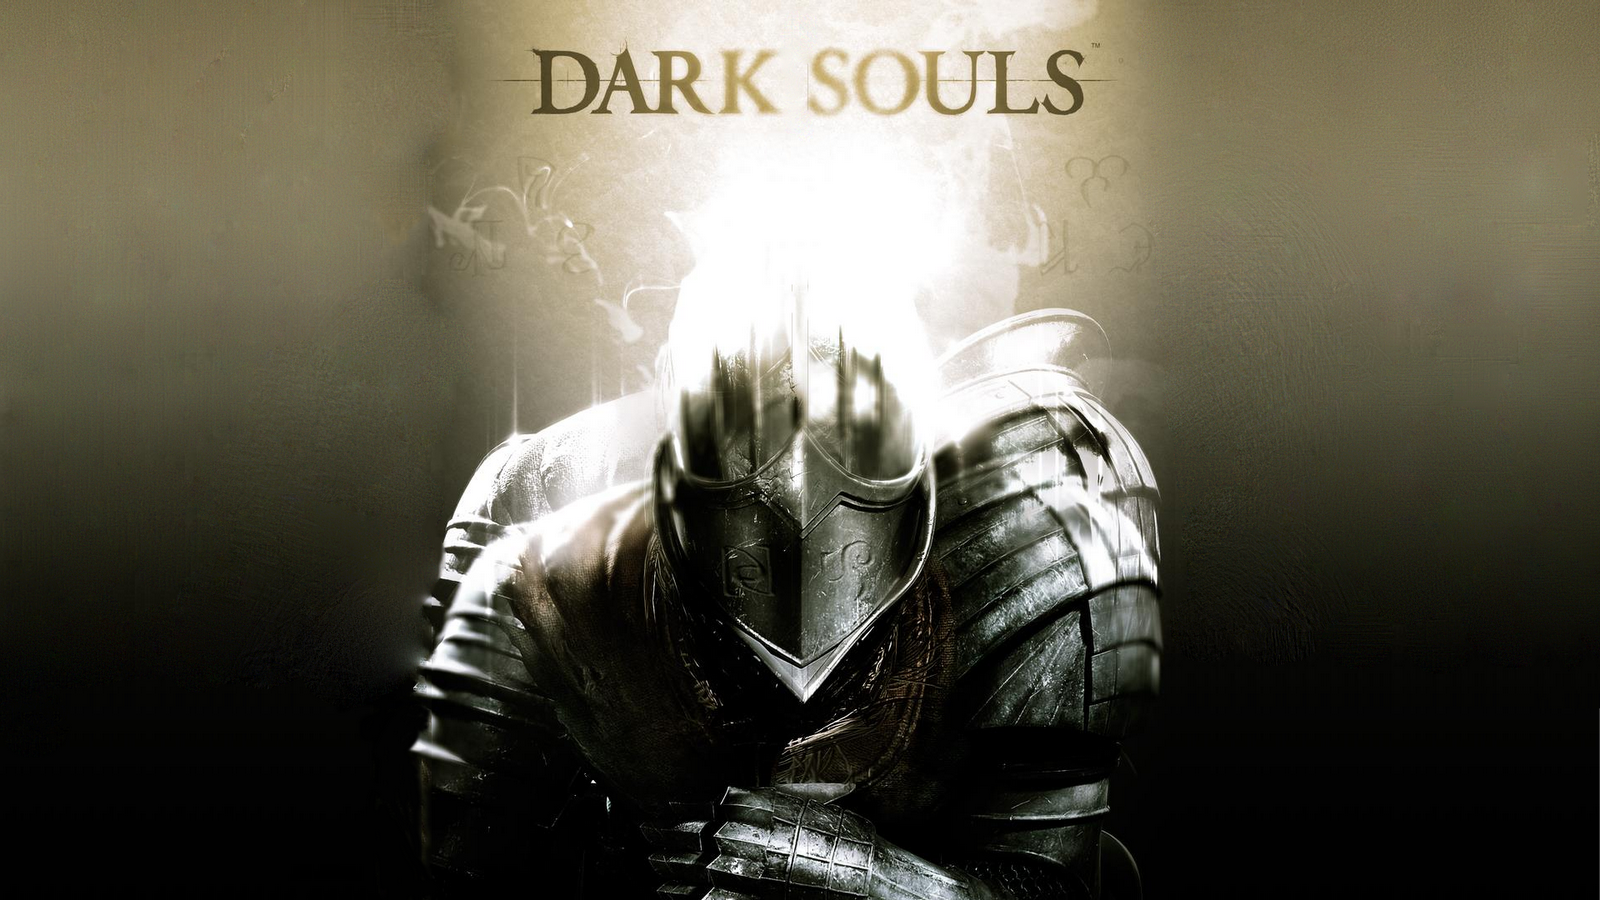 49+] Dark Souls 2 Wallpapers - WallpaperSafari